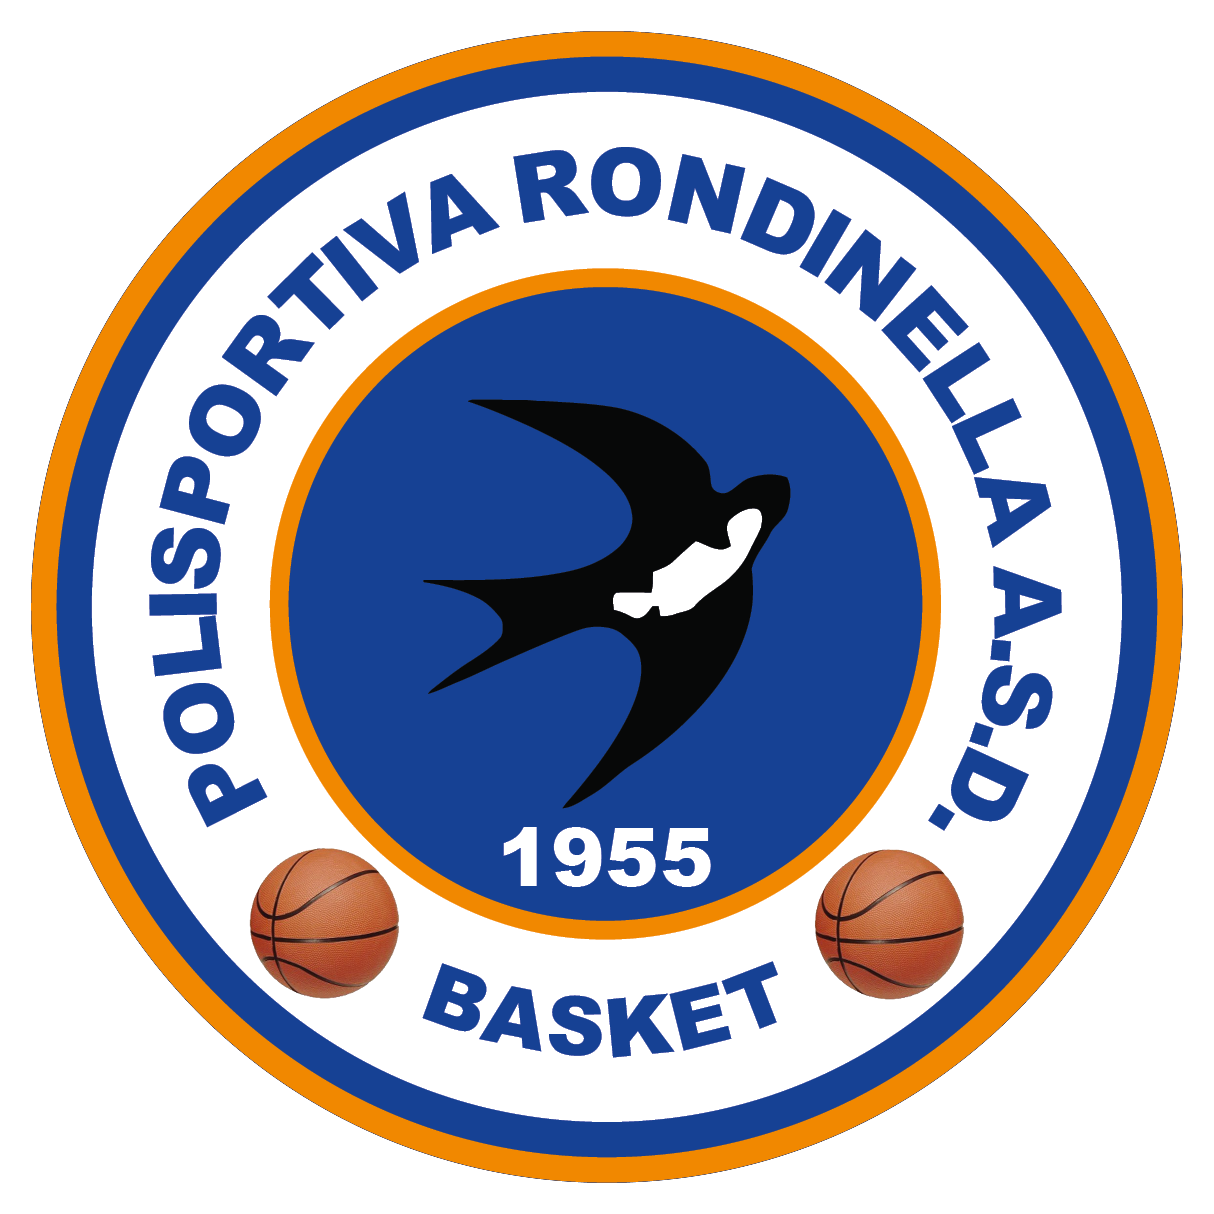 Polisportiva Rondinella A.S.D. 1955 - Sezione Basket